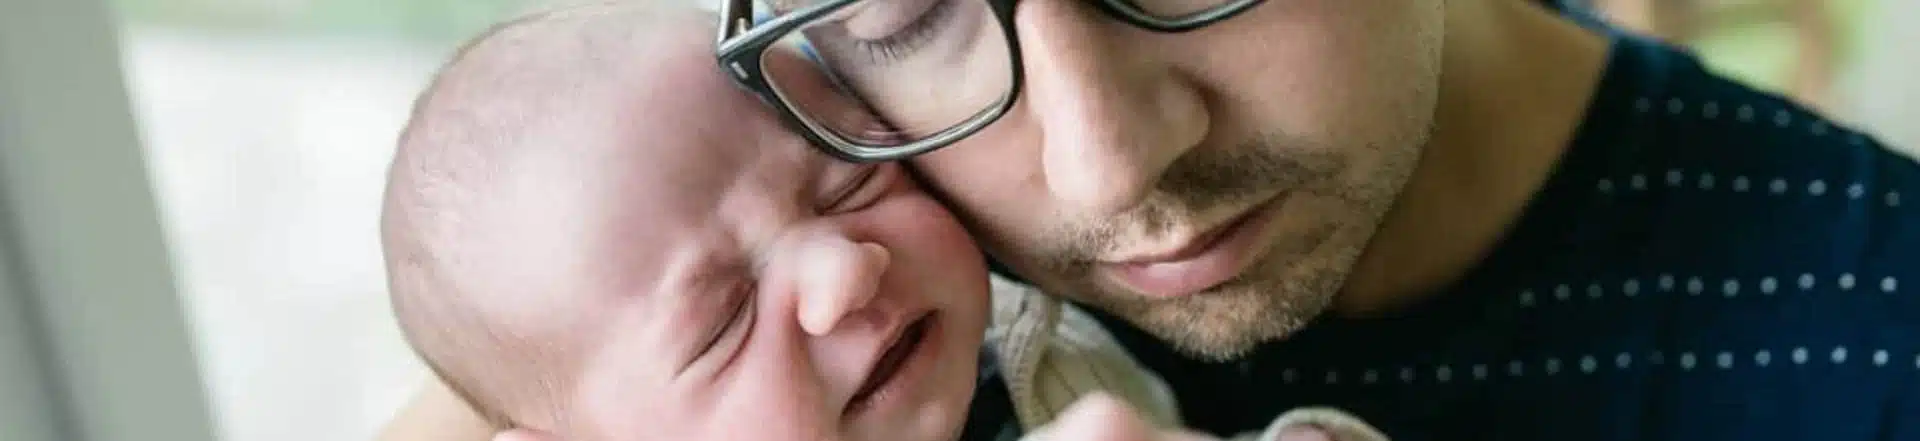 אבא מחבק תינוק בוכה